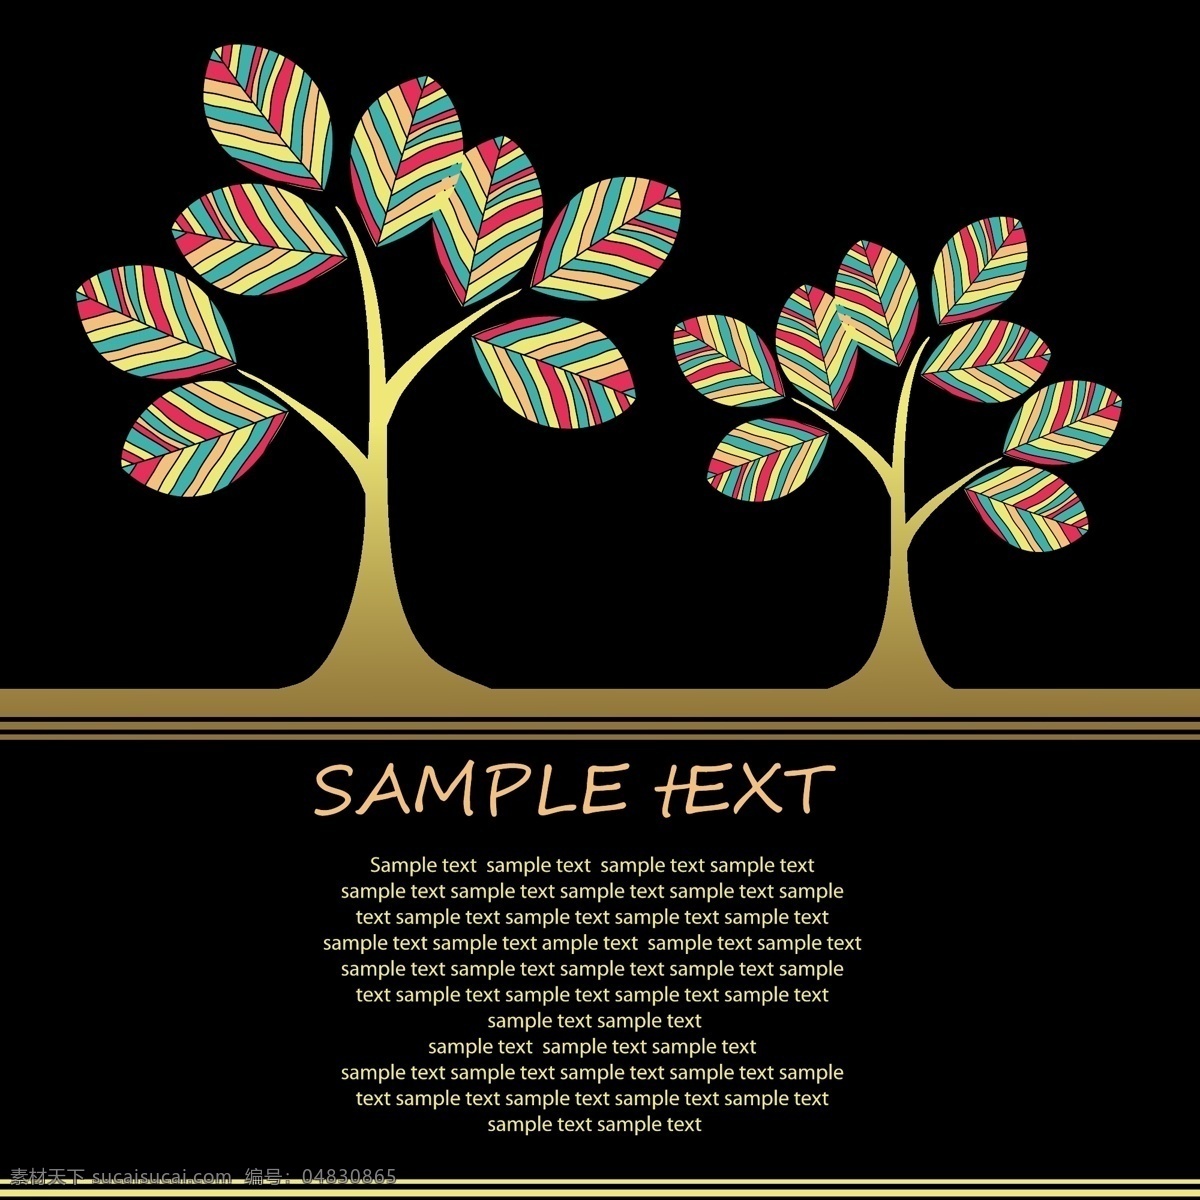 蝴蝶 花朵 树木 插画 矢量素材 矢量图 设计素材 创意设计 大树 矢量 高清图片